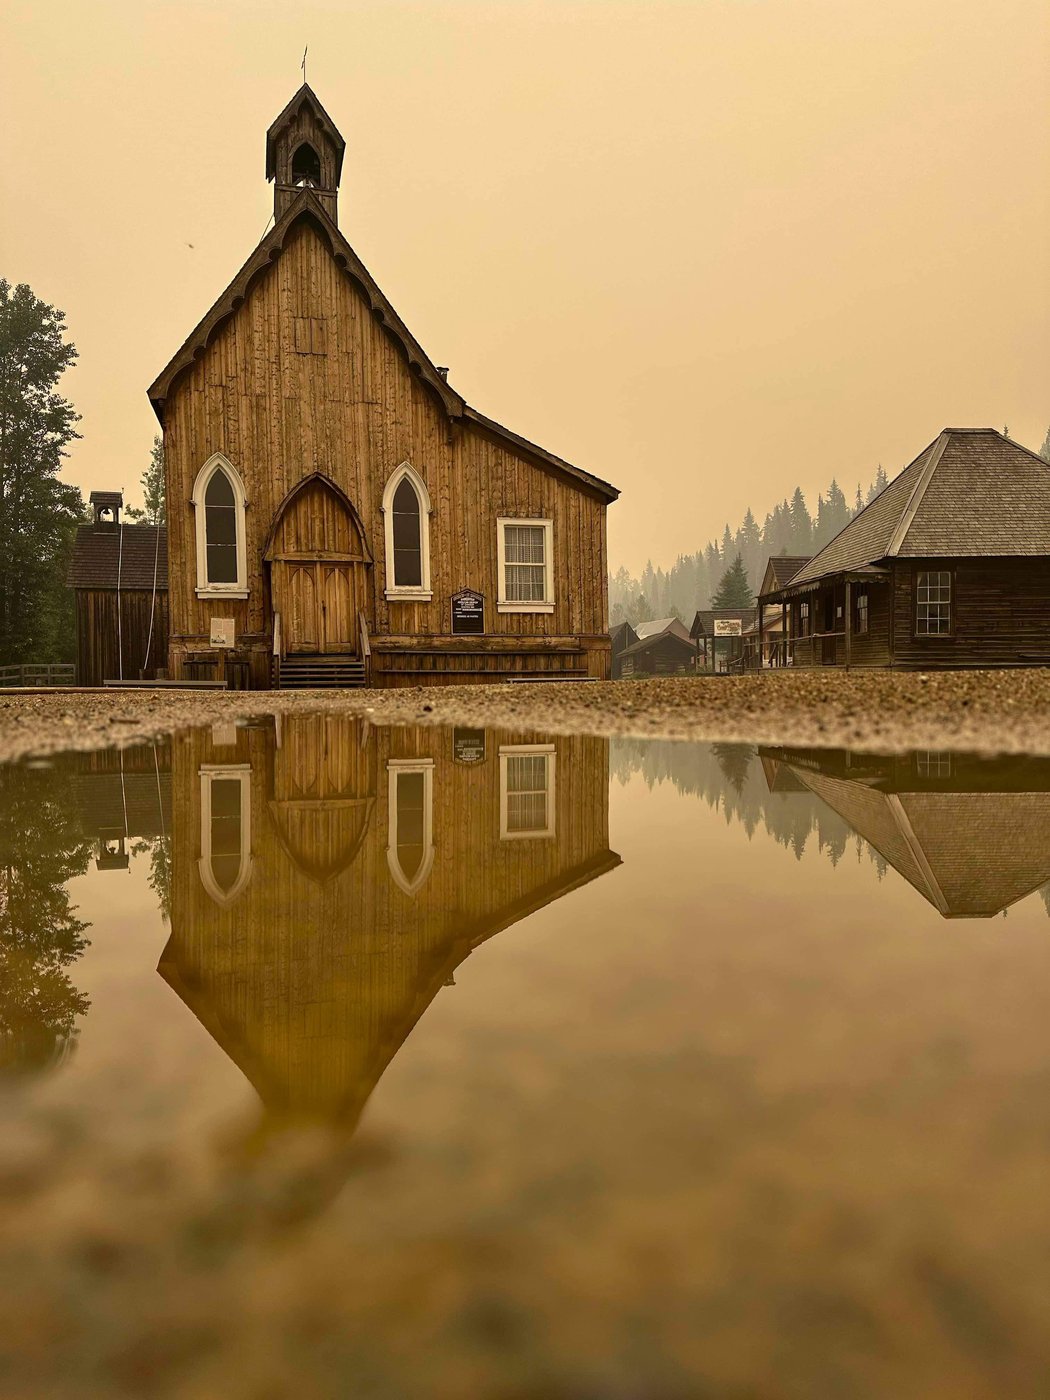 Colombie-Britannique: les feux de forêt s’intensifient, un village historique menacé